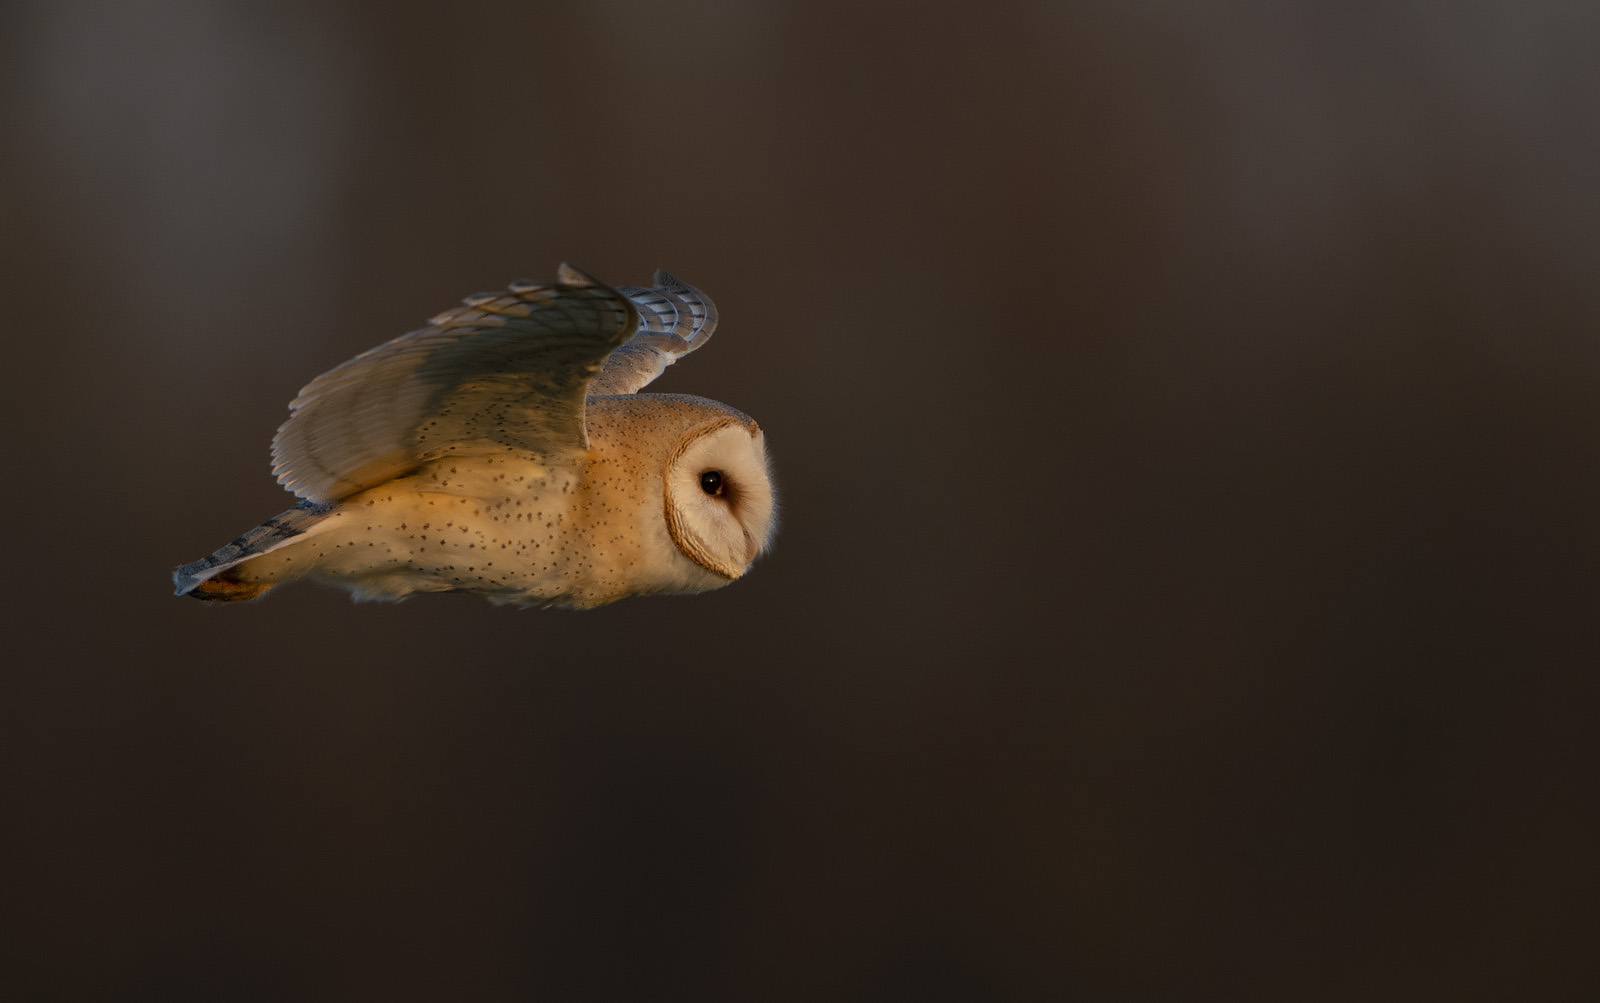 Barn Owl flight at sunset